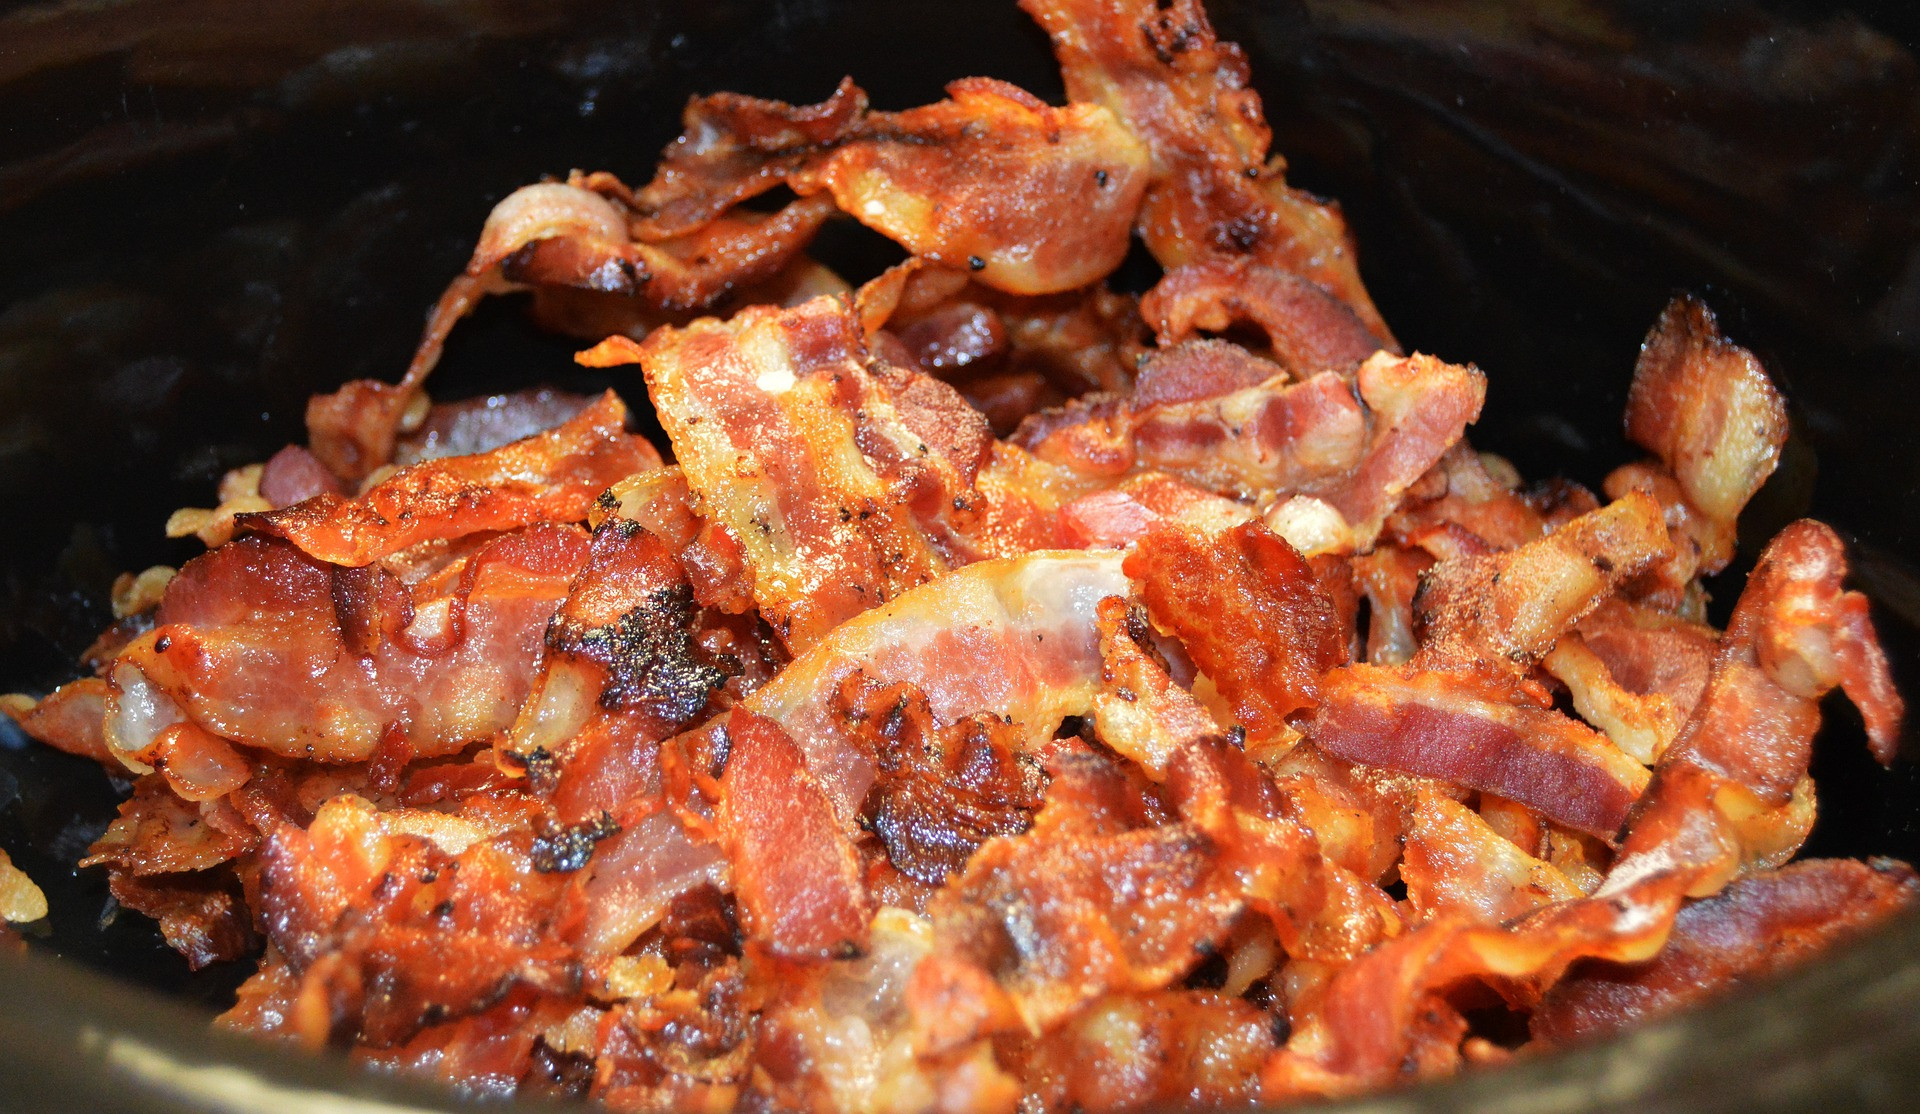 Jesť príliš veľa slaniny môže byť riskantné. To platí aj pre iné spracované mäso, ako sú hot dogy, klobása či šunka. Po preskúmaní viac ako 800 vedeckých štúdií klasifikovala Svetová zdravotnícka organizácia mäso, ktoré bolo solené, udené alebo fermentované ako karcinogén. Zjedenie 50 gramov alebo ekvivalent štyroch prúžkov slaniny alebo jedného hot doga zvyšuje riziko vzniku kolorektálneho karcinómu každý deň o 18 percent. Iná štúdia od Amerického inštitútu pre výskum rakoviny a Svetového fondu pre výskum rakoviny našla podobne zvýšené riziko rakoviny dolnej časti žalúdka. Ak si chcete vychutnať občasný spracovaný mäsový výrobok, choďte do toho, ale uistite sa, že je to len príležitostný pôžitok.